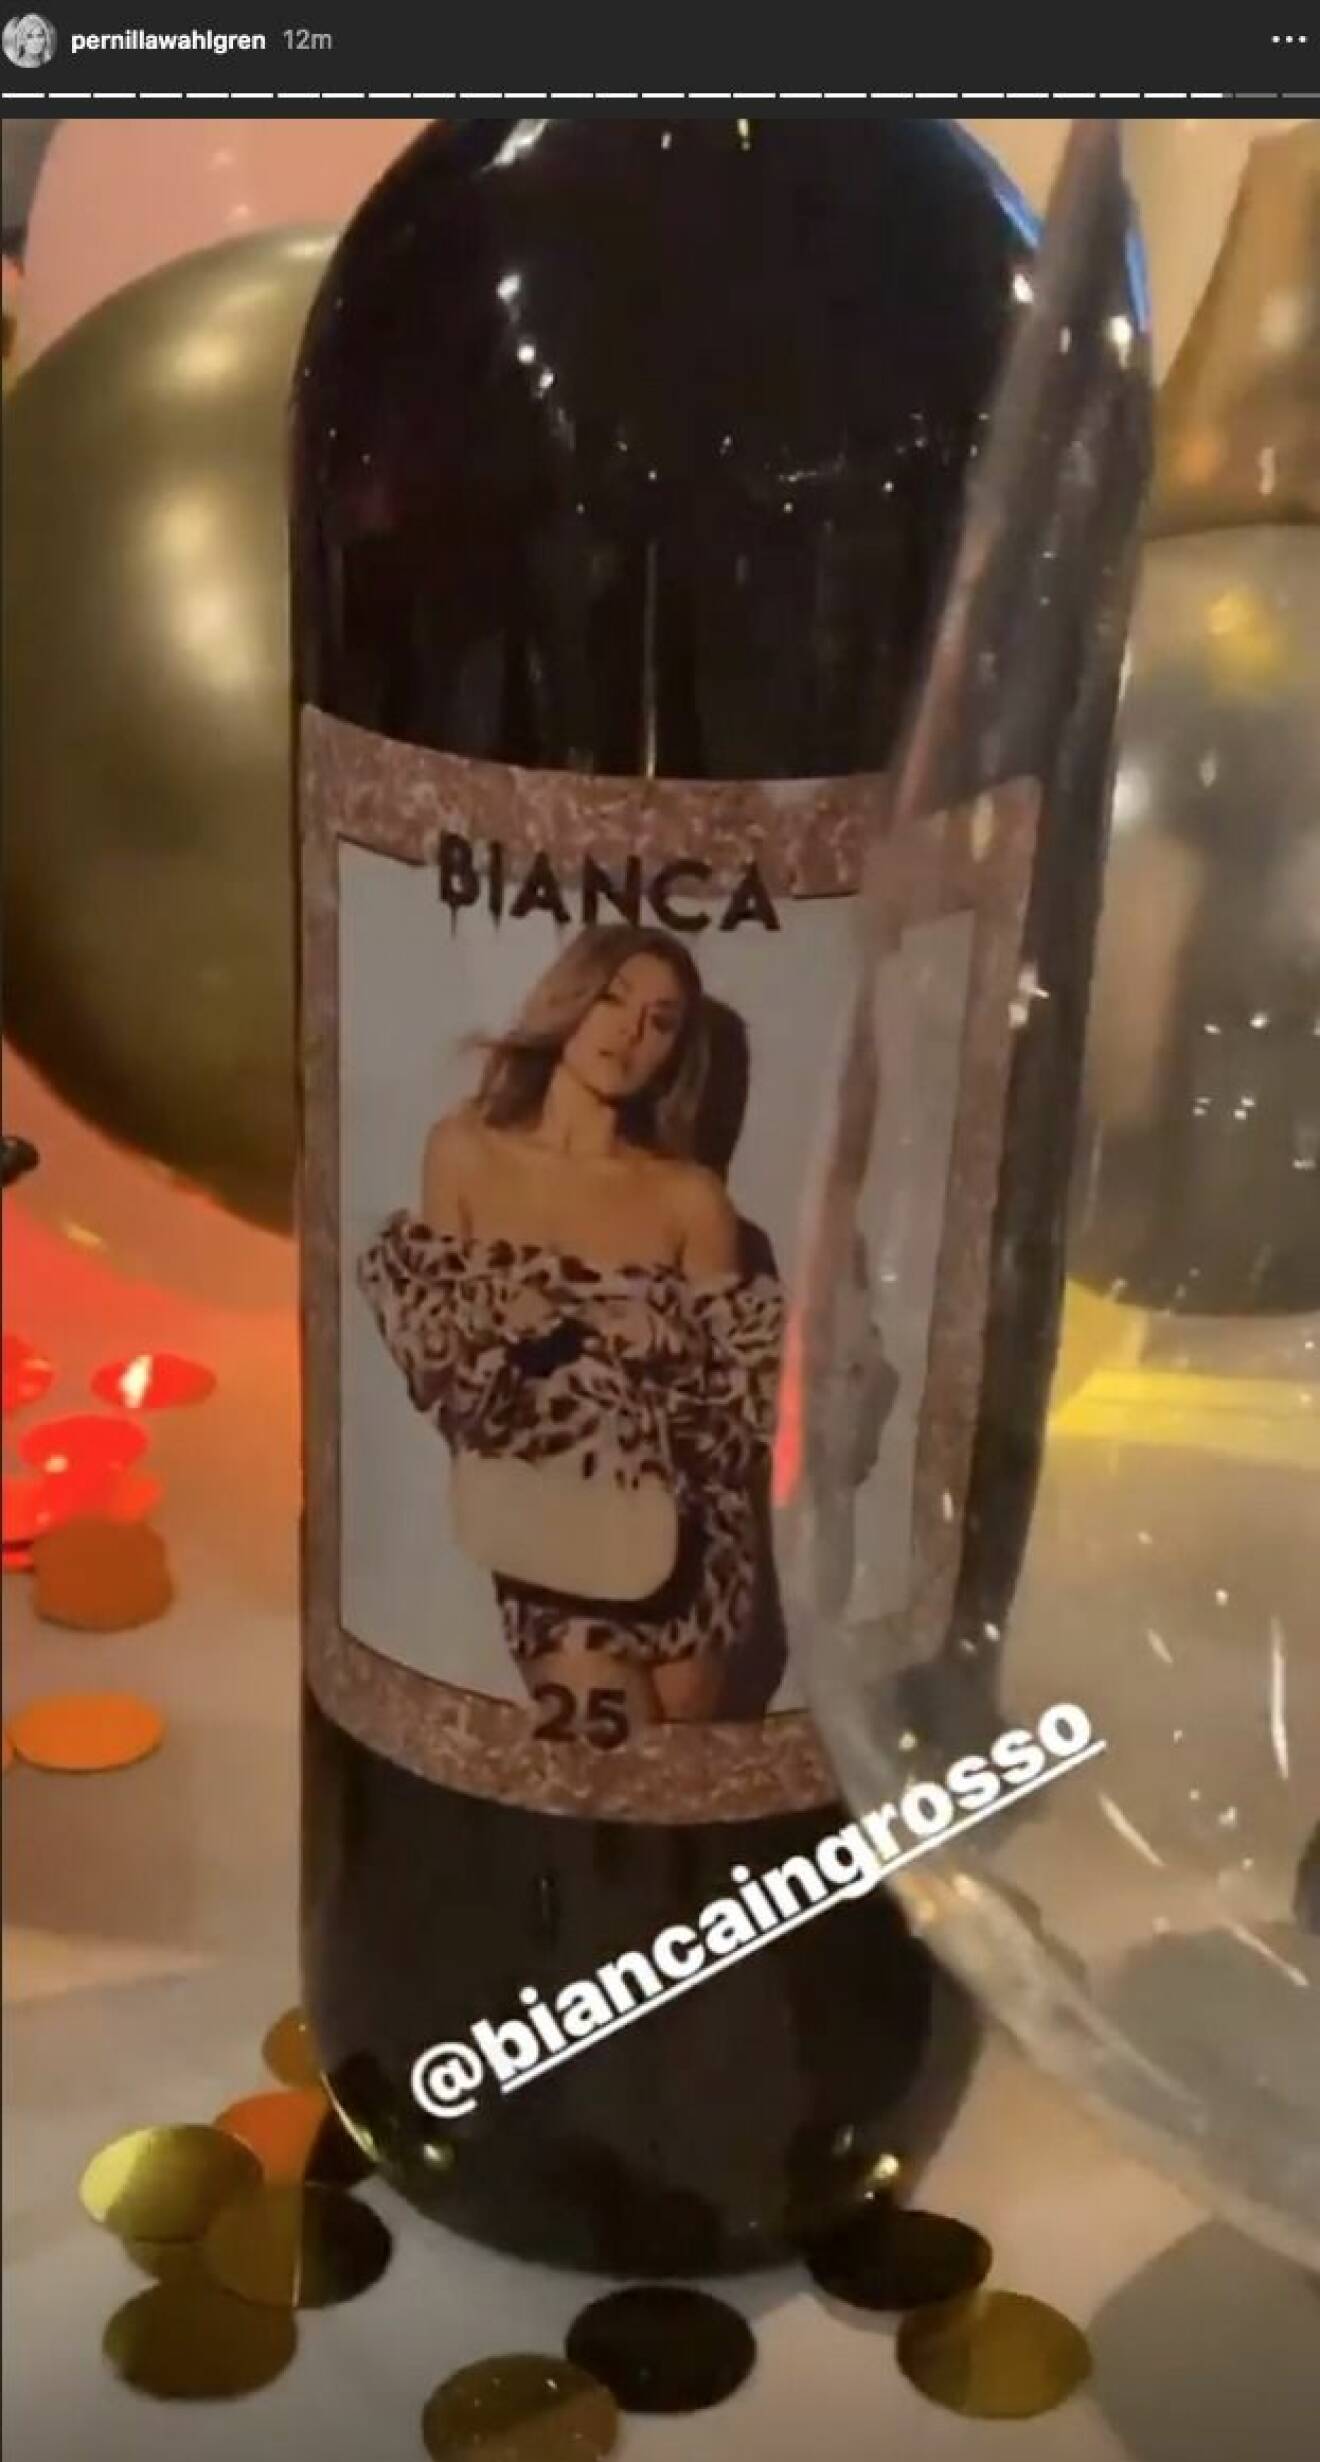 Bianca Ingrossos 25-årsfest på Fåfängan i Stockholm.